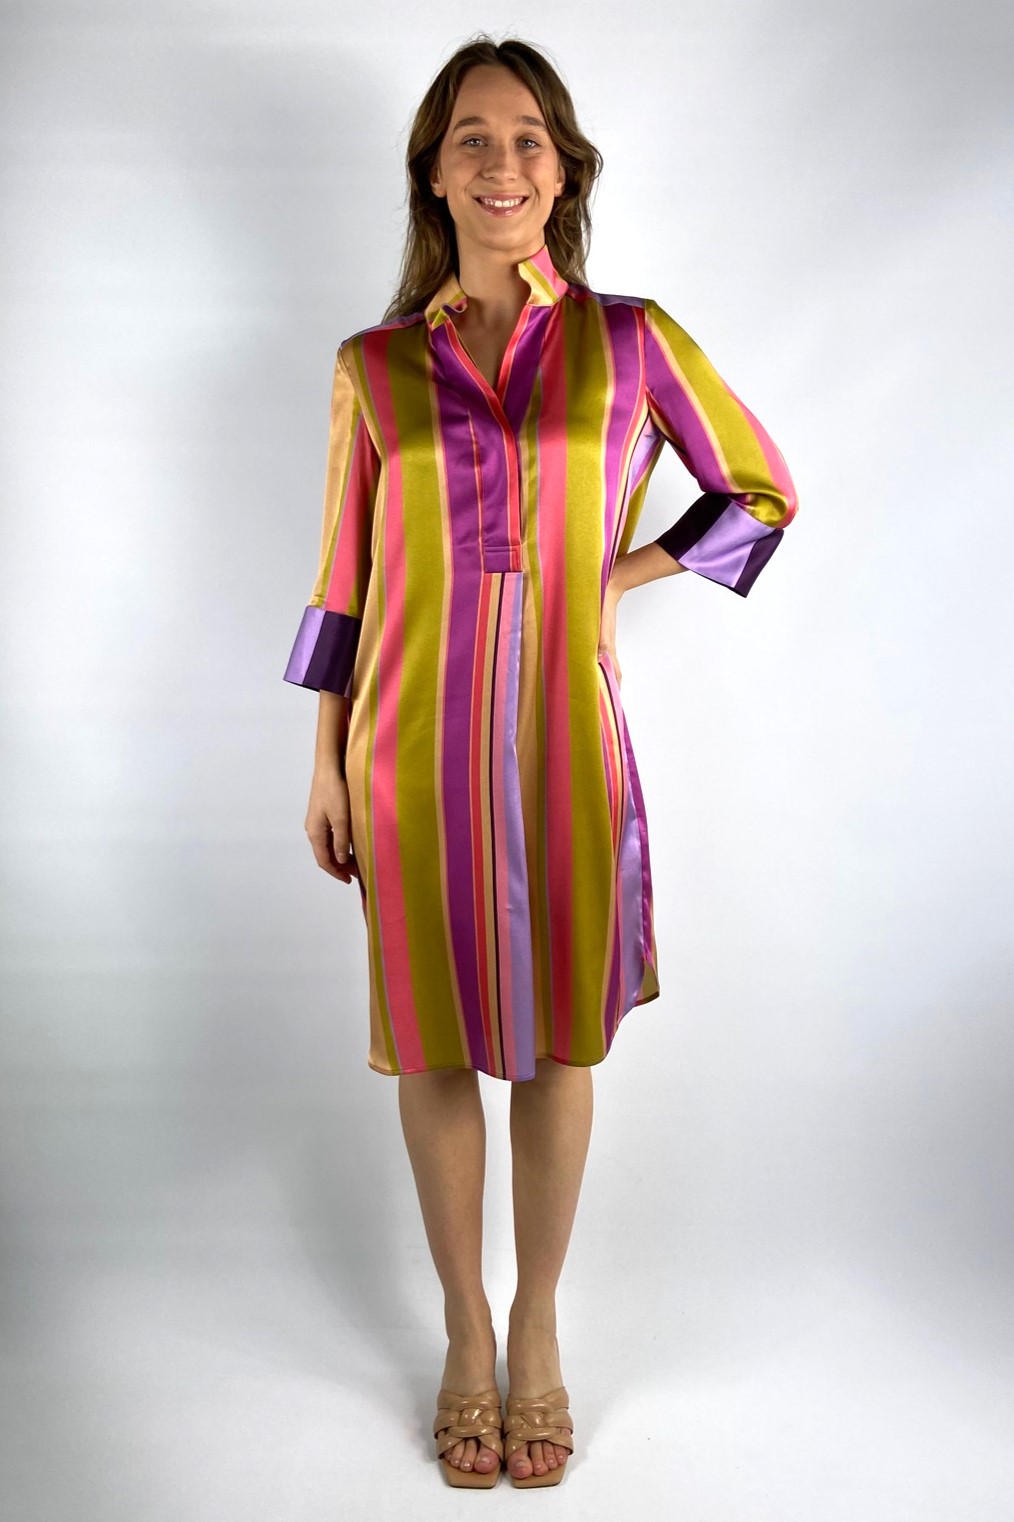 Hemdkleed zijdestretch in de kleur multicolor van het merk Dea kudibal